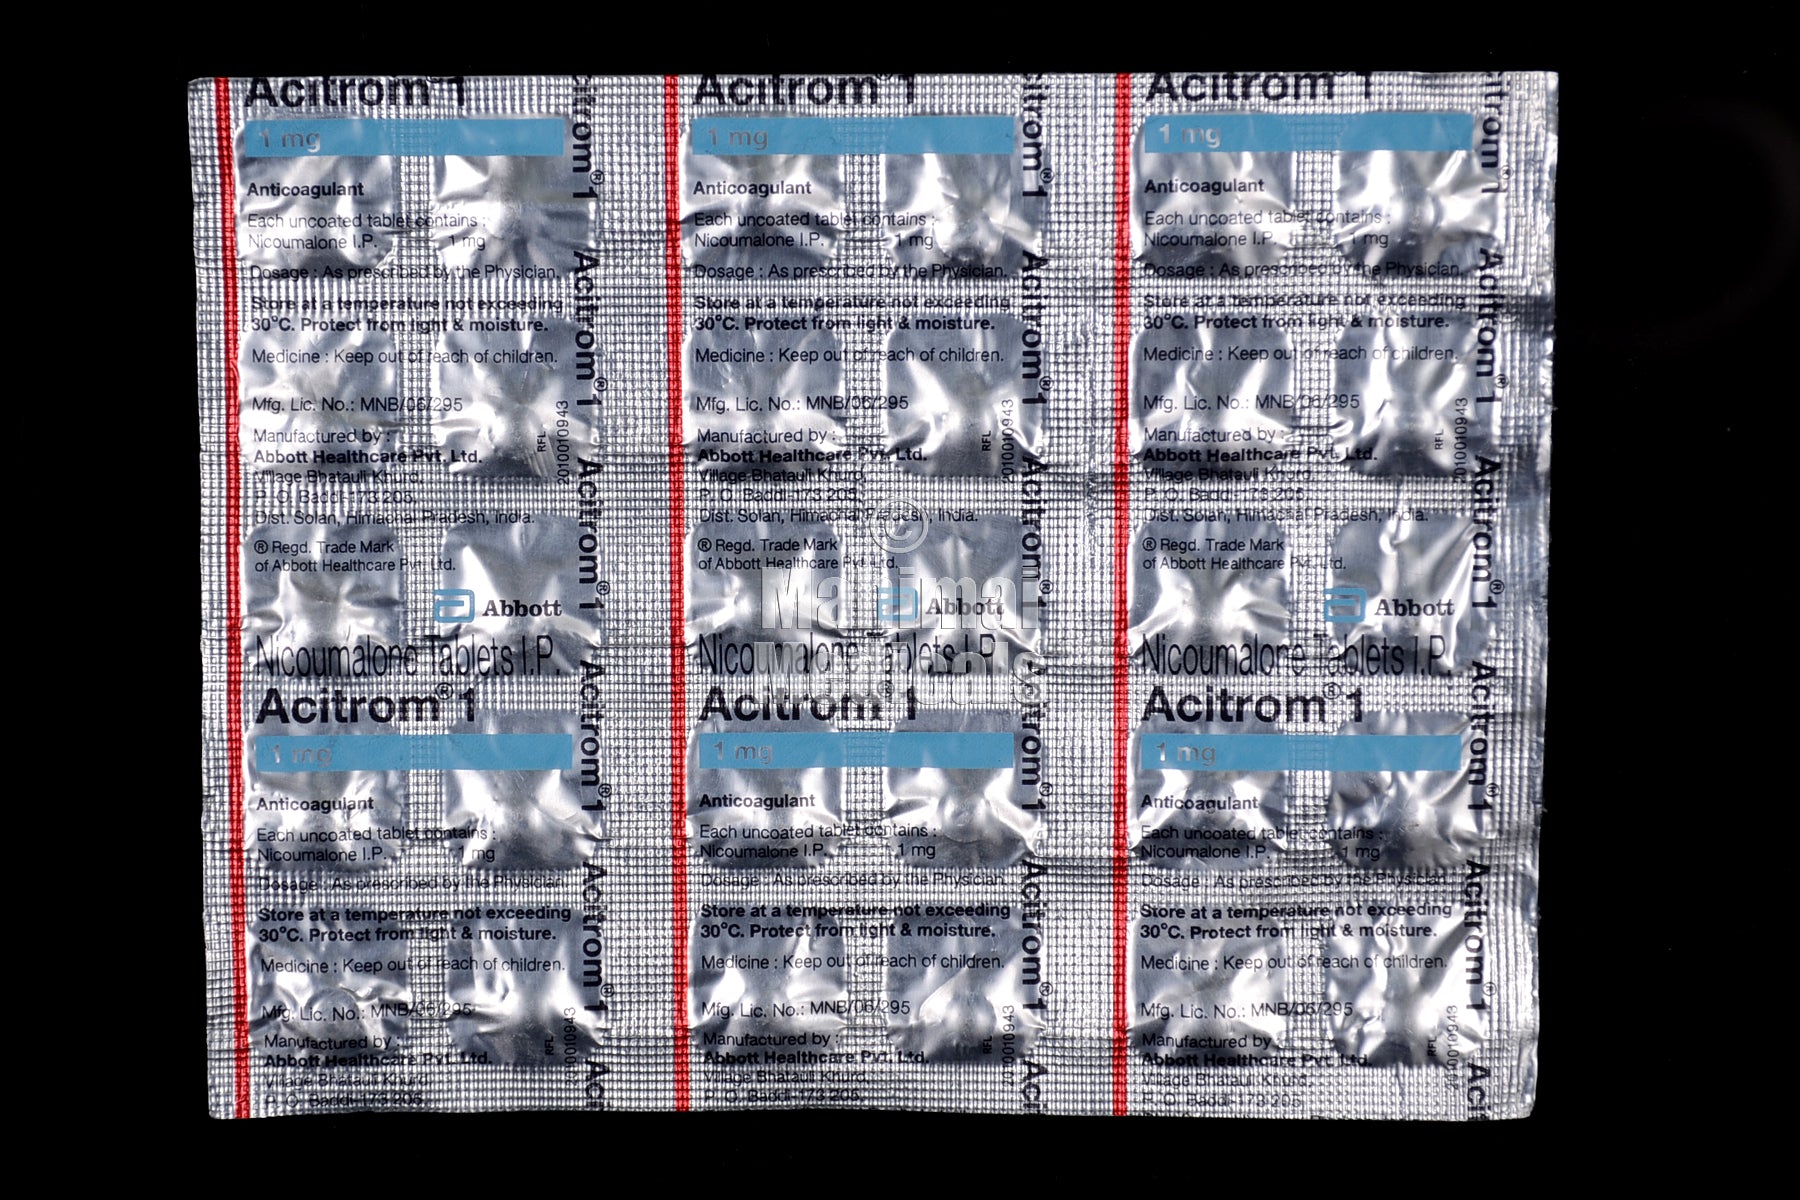 Acitrom 1 mg Tablet